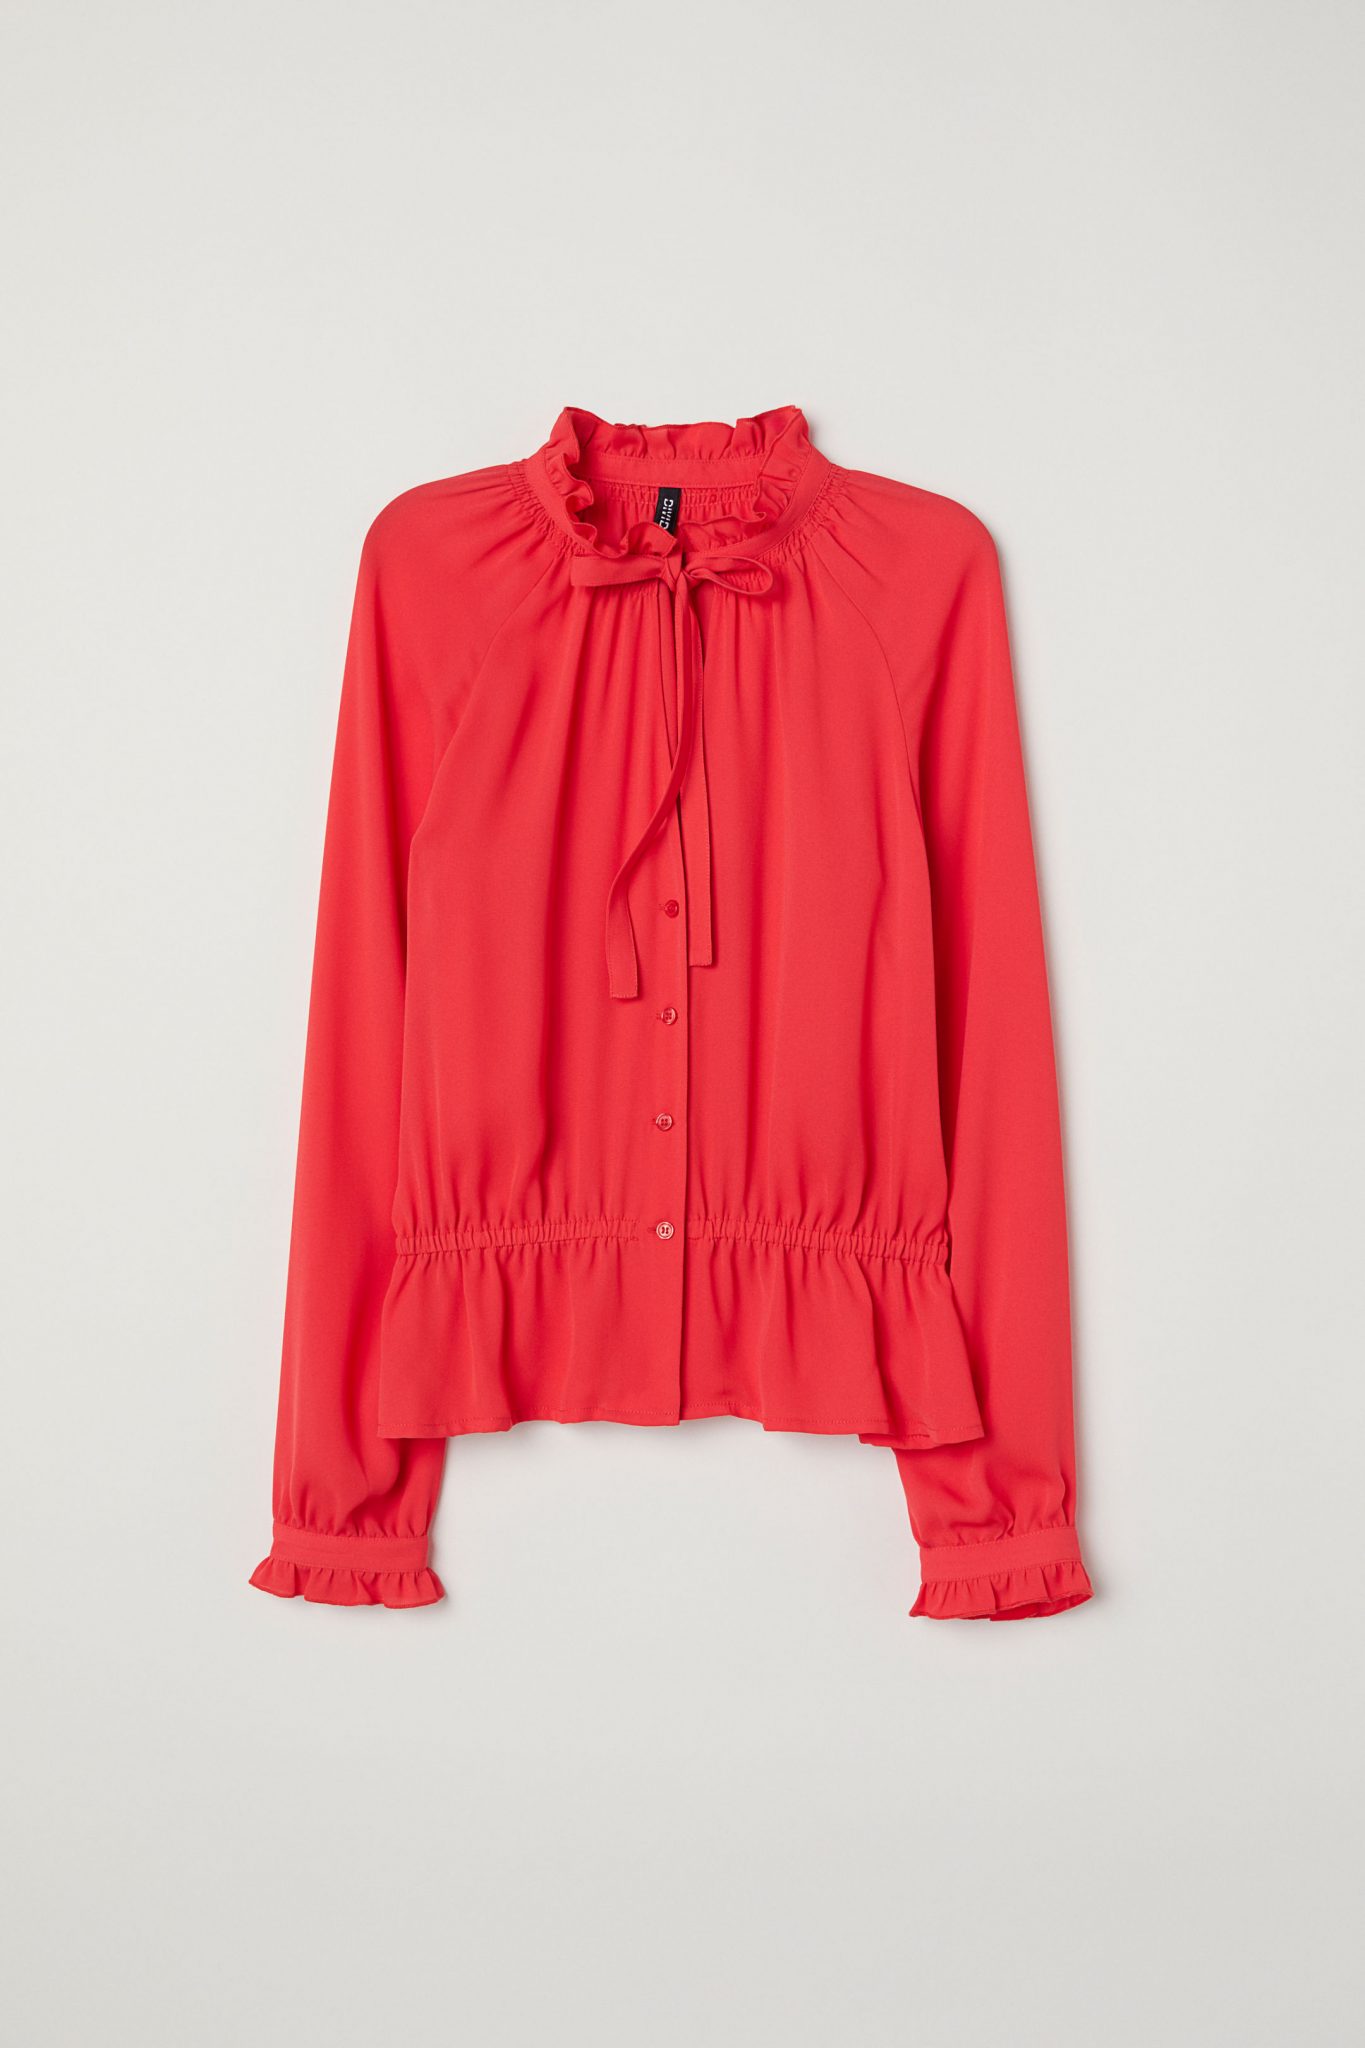 red chiffon blouse uk